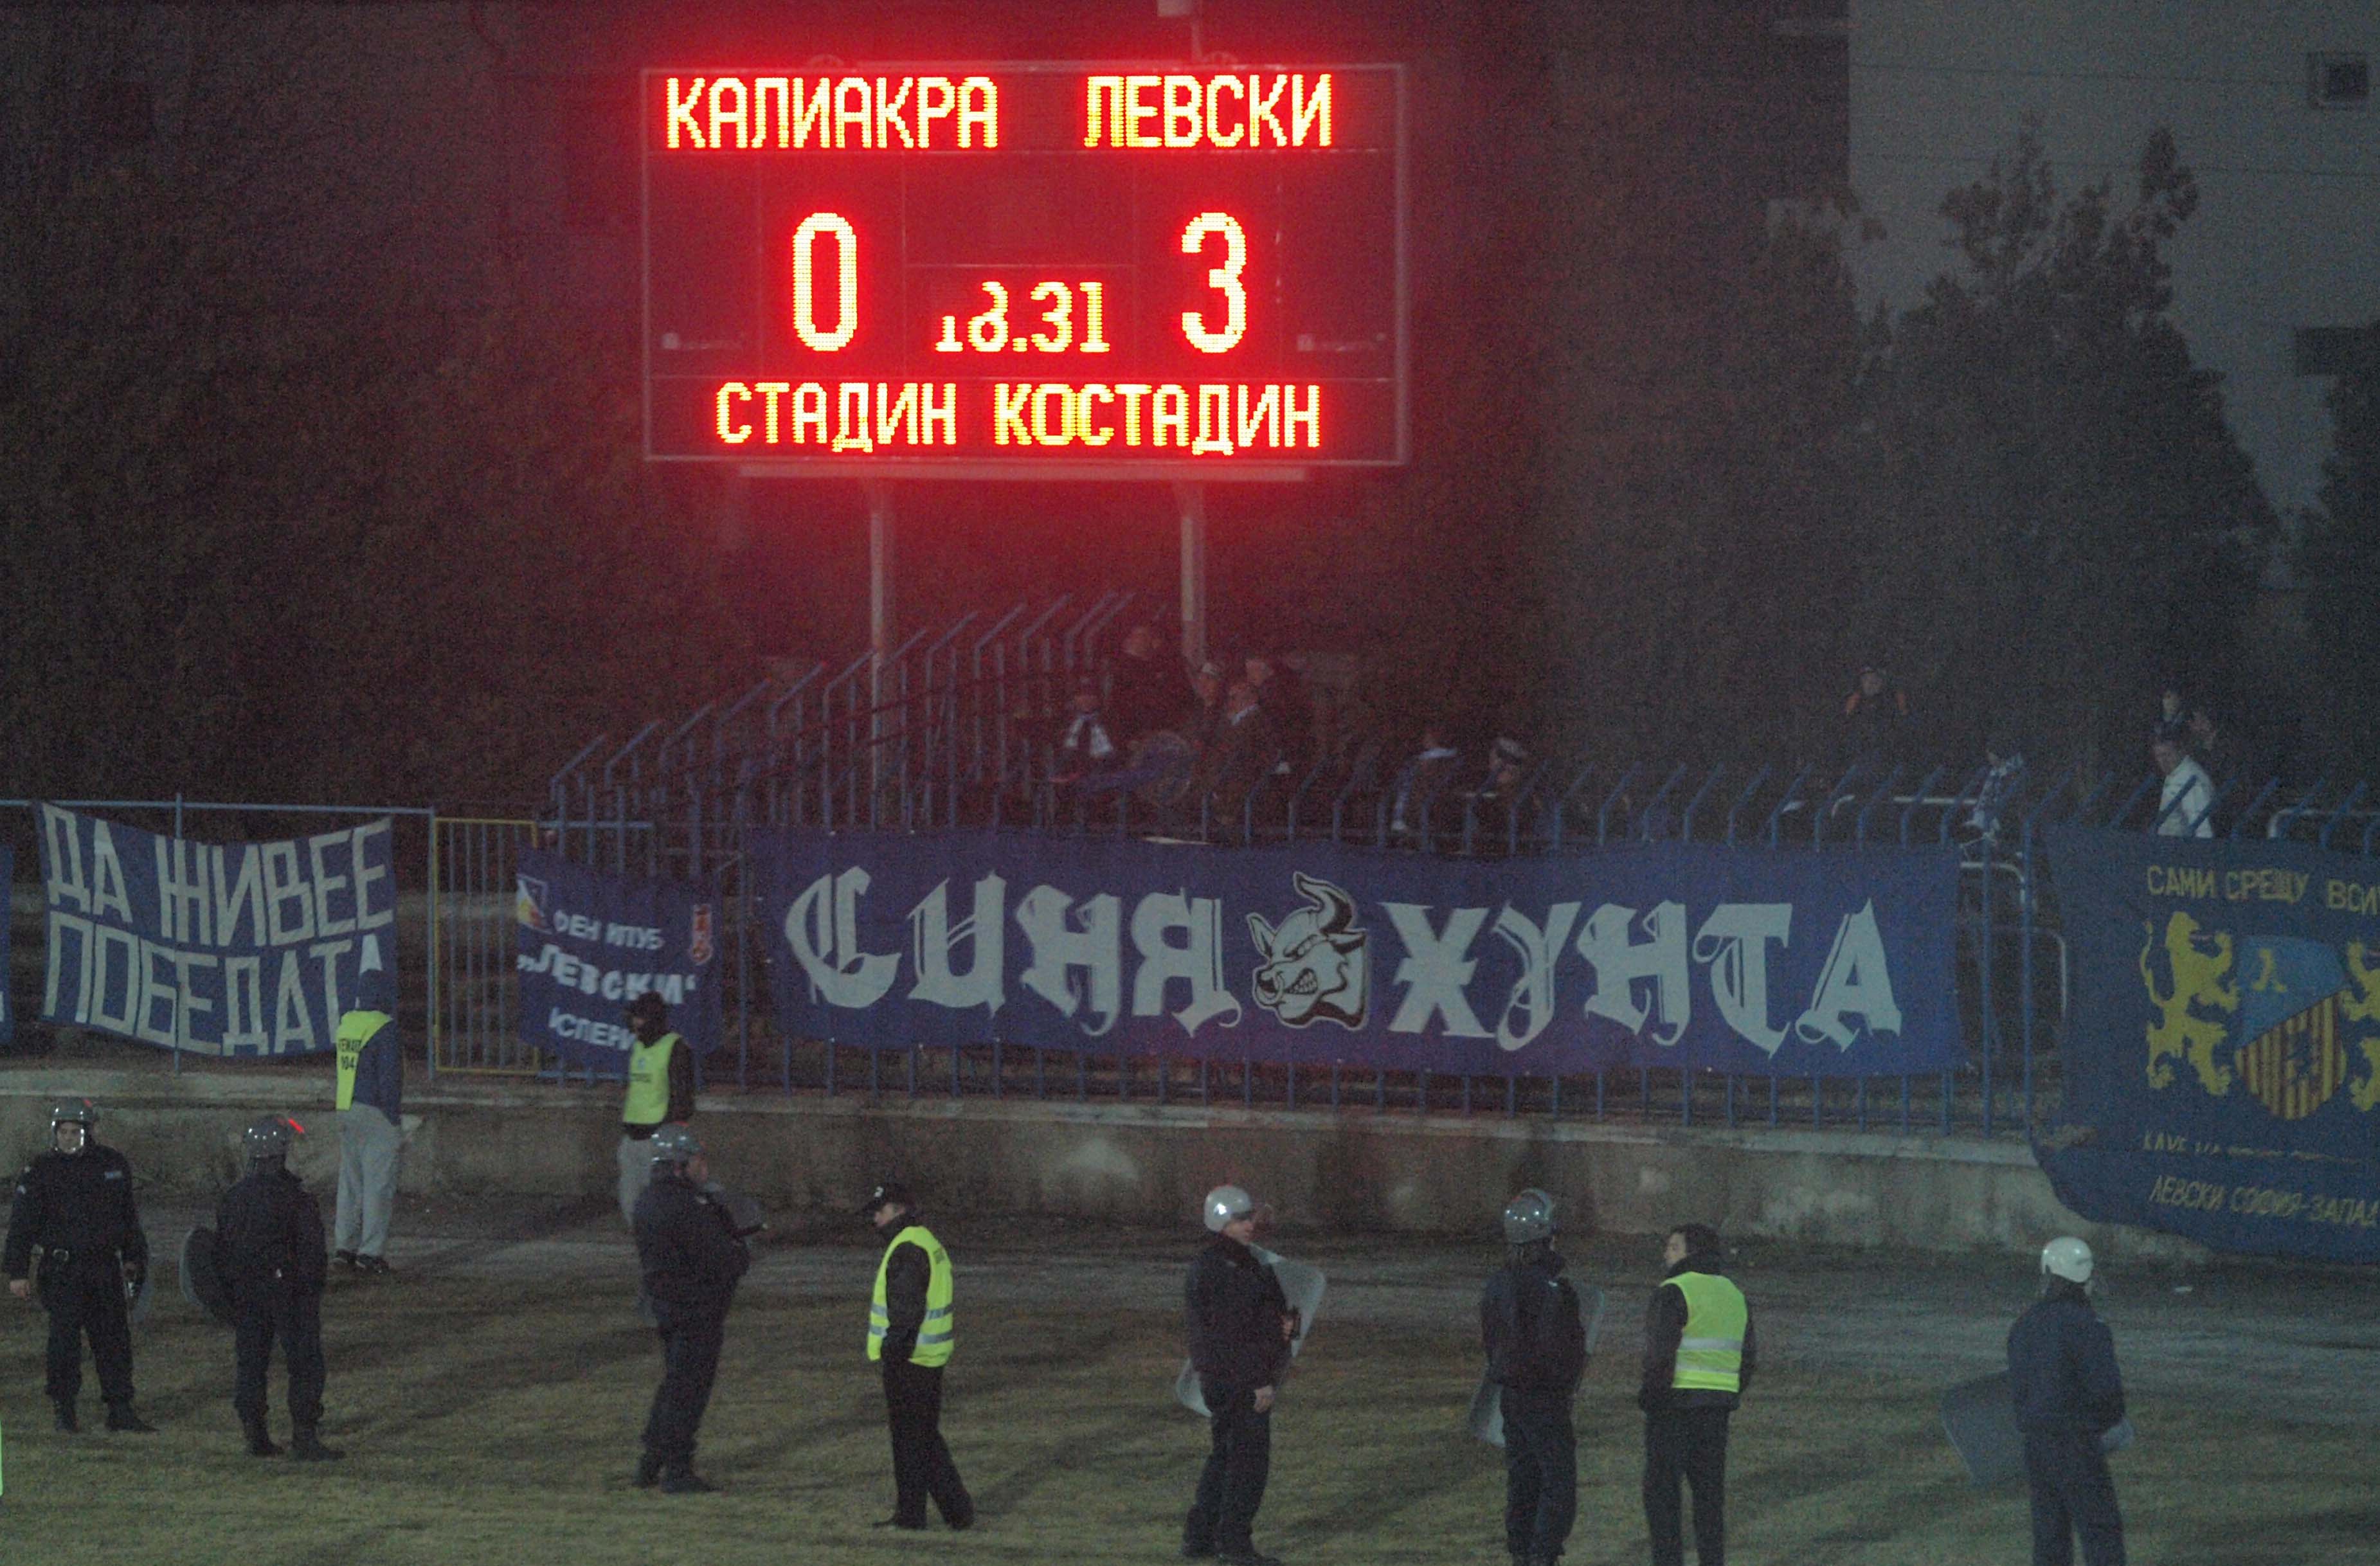 Спортно-техническата комисия реши Левски да получи служебно трите точки, а за Калиакра санкцията бе само загуба